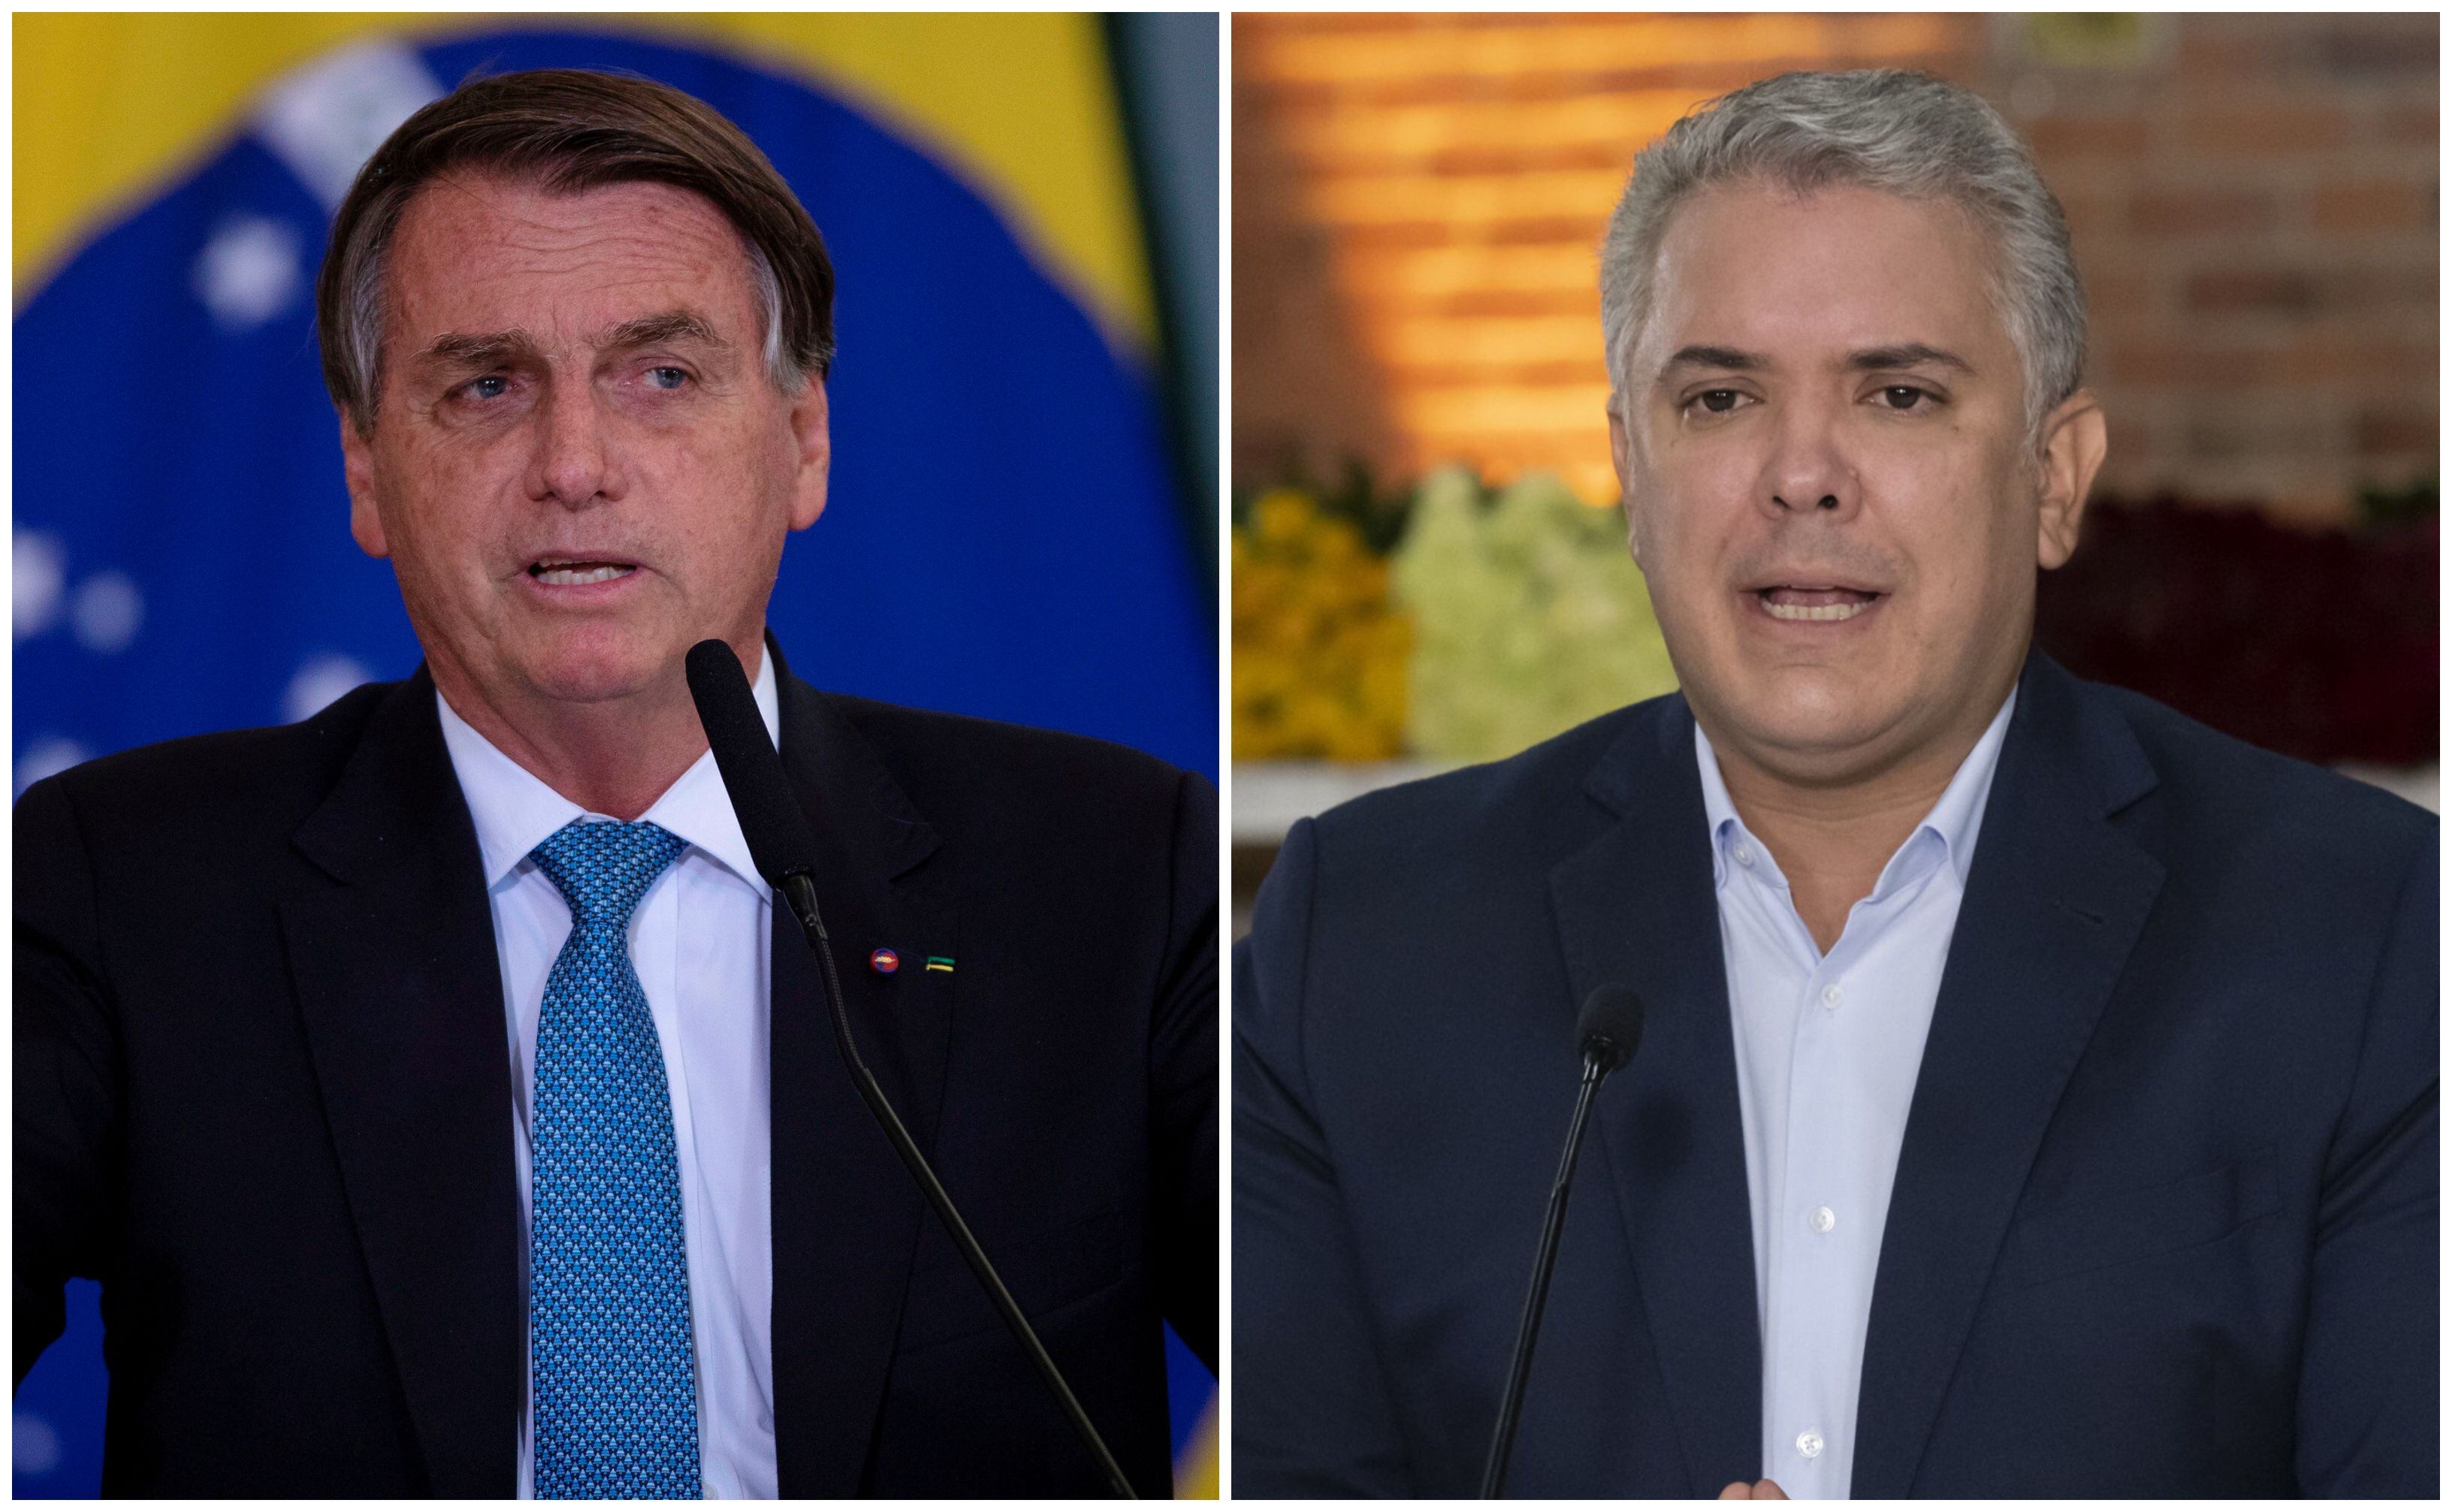 Jair Bolsonaro e Iván Duque, presidentes de Brasil y Colombia, se reunirán este martes en Brasilia. Fotos: EFE (Joédson Alves) / Presidencia de Colombia